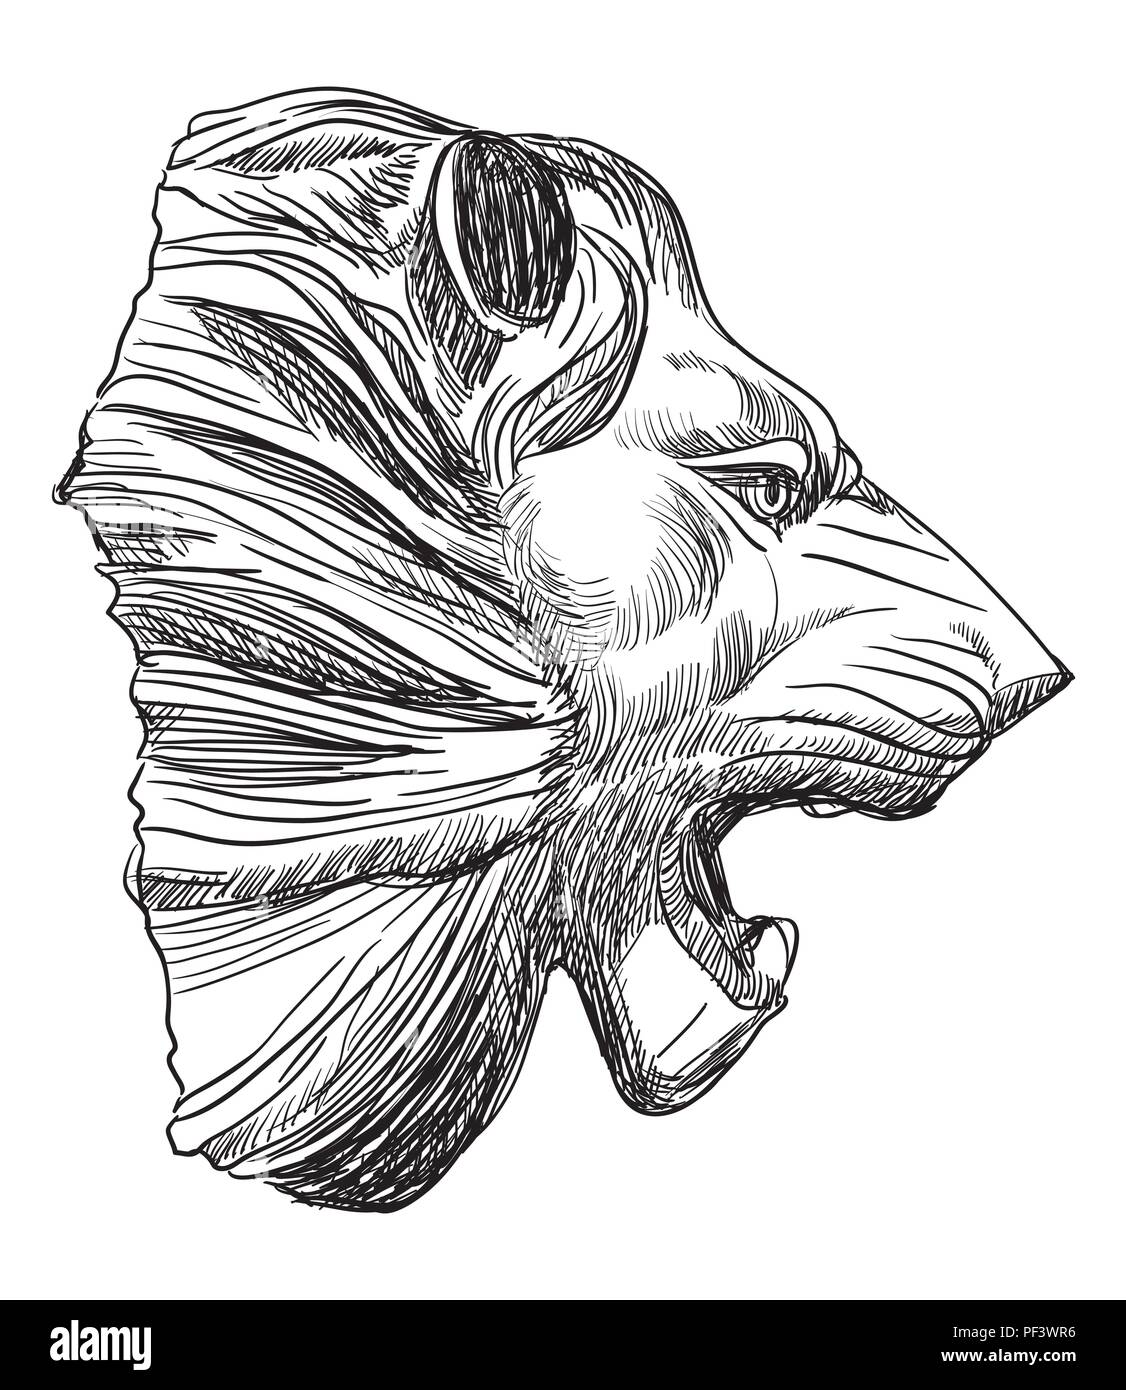 Antiguo relieve, escultura en forma de cabeza de león en la vista de perfil, vector de dibujo a mano alzada en la ilustración aislada de color negro sobre fondo blanco. Ilustración del Vector